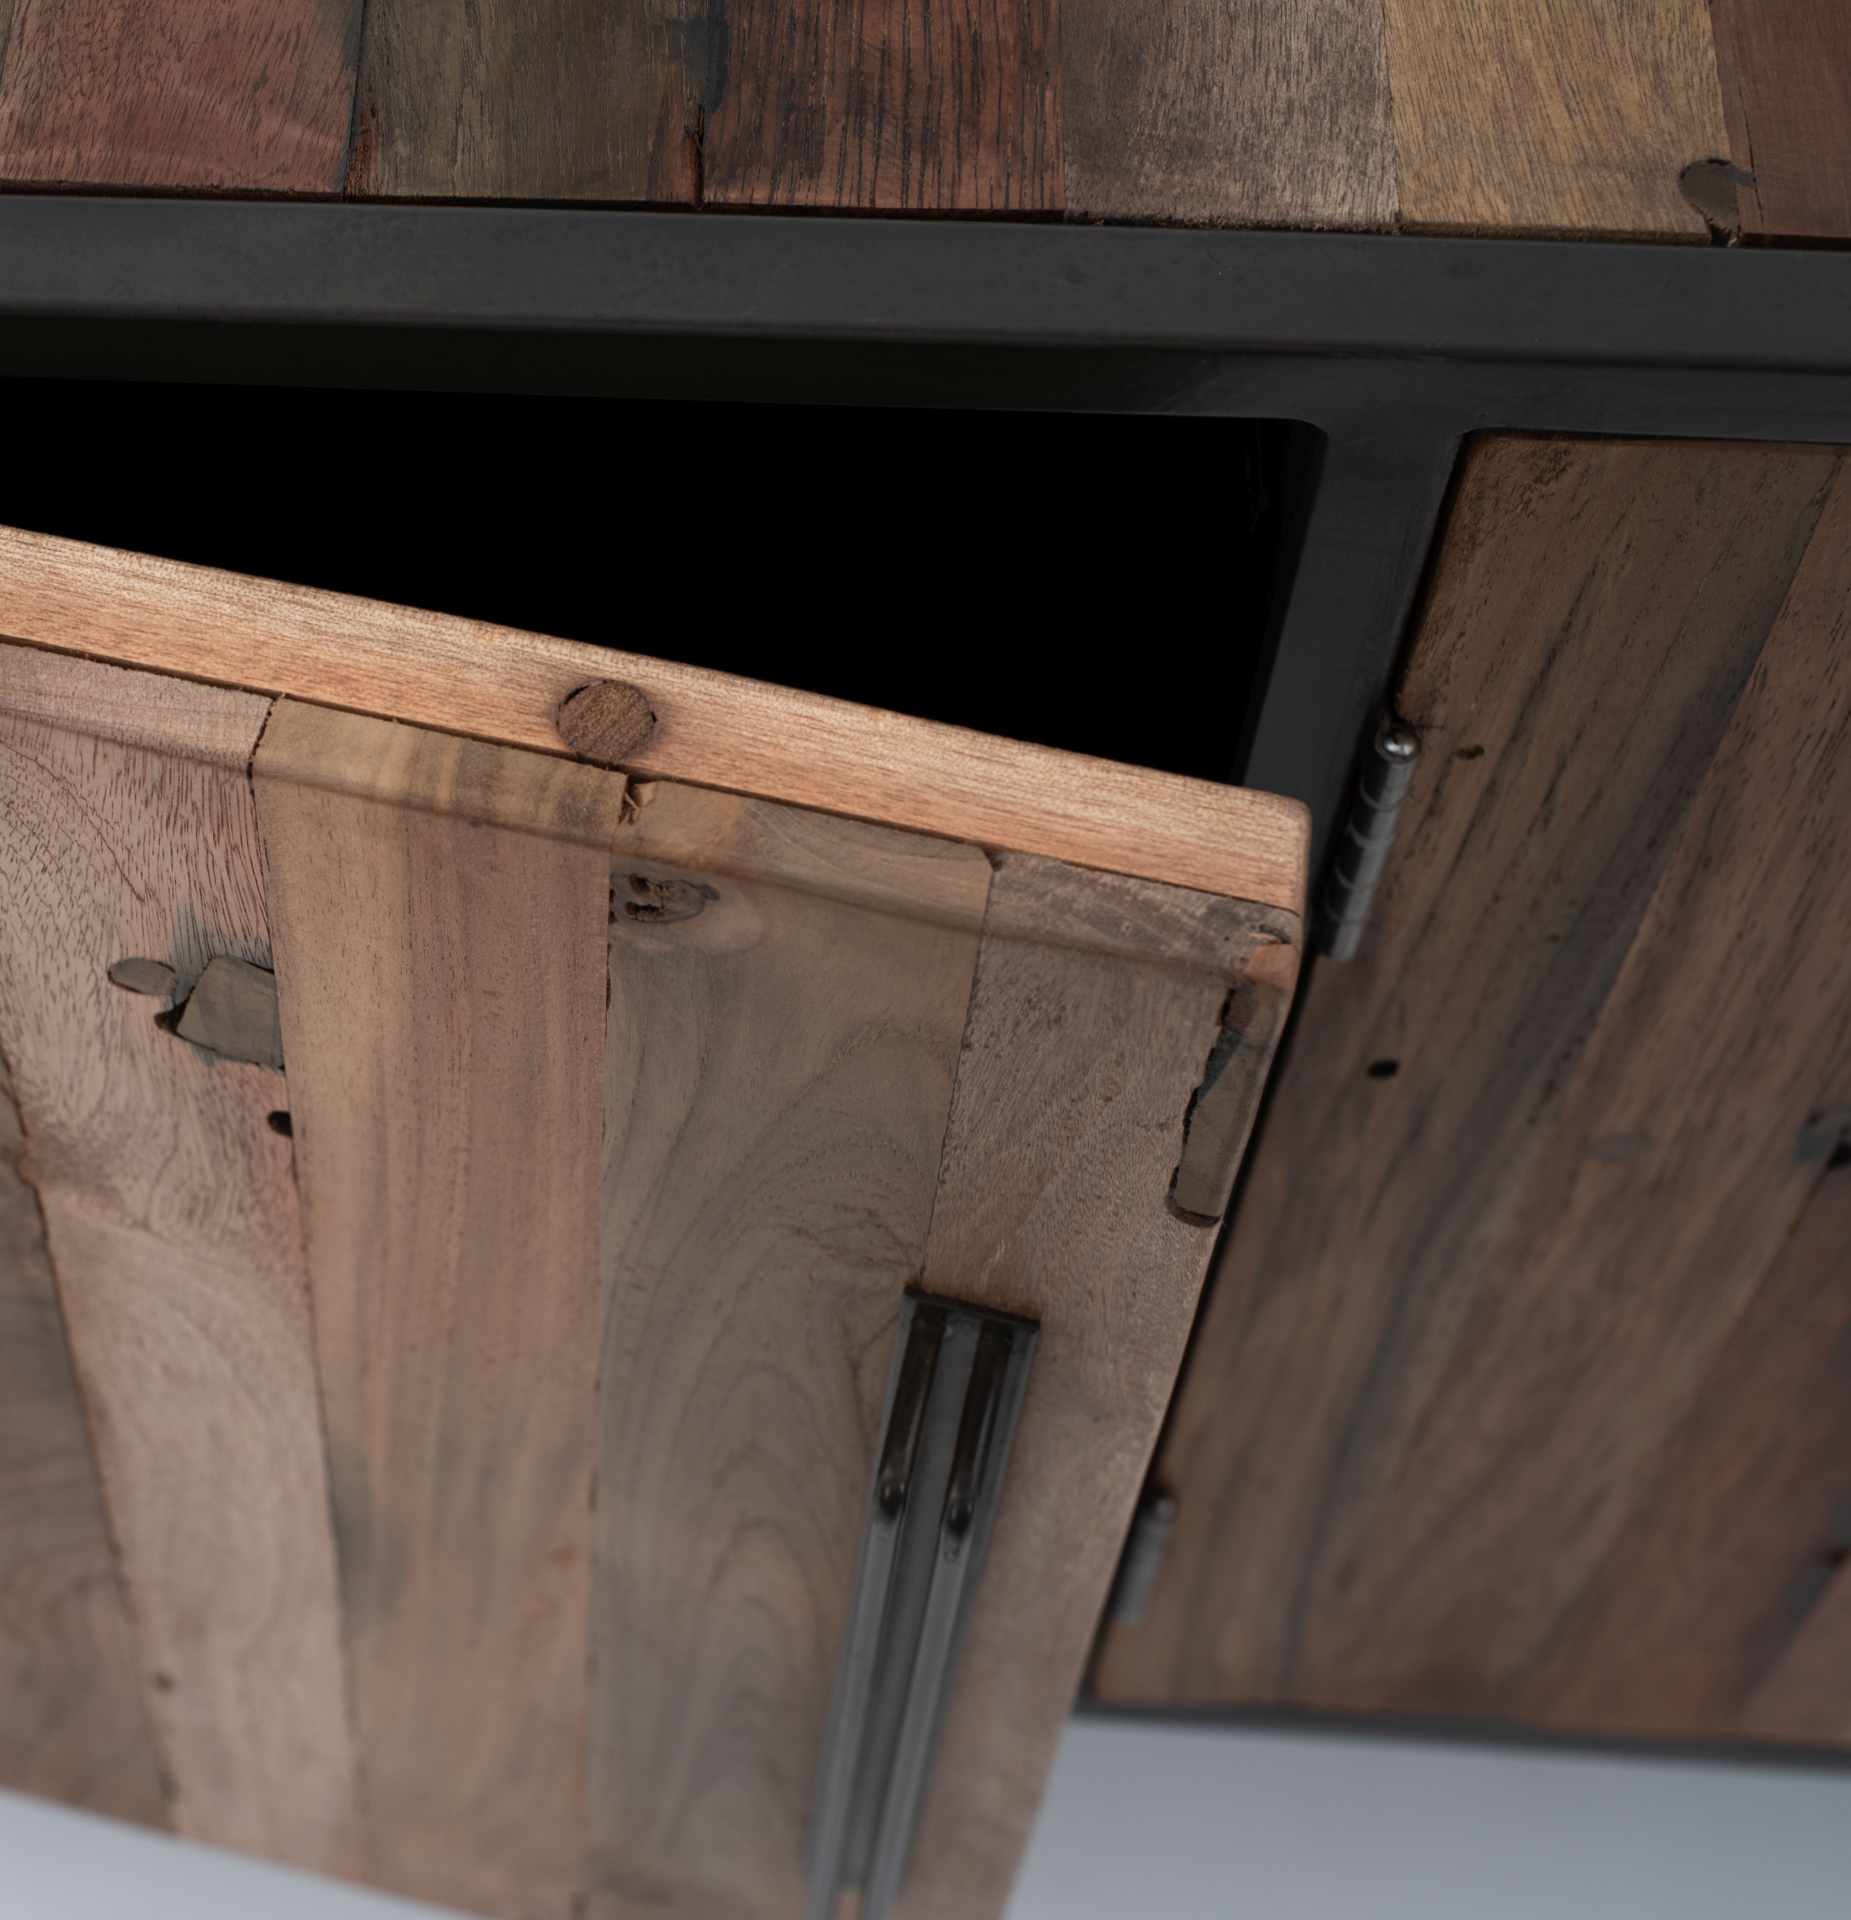 Das TV-Board Nordic überzeugt mit seinem Industriellen Design. Gefertigt wurde es aus Recyceltem Boots Holz, welches einen natürlichen Farbton besitzt. Das Gestell ist aus Metall und hat eine Anthrazit Farbe. Das TV-Board verfügt über drei Türen. Die Brei